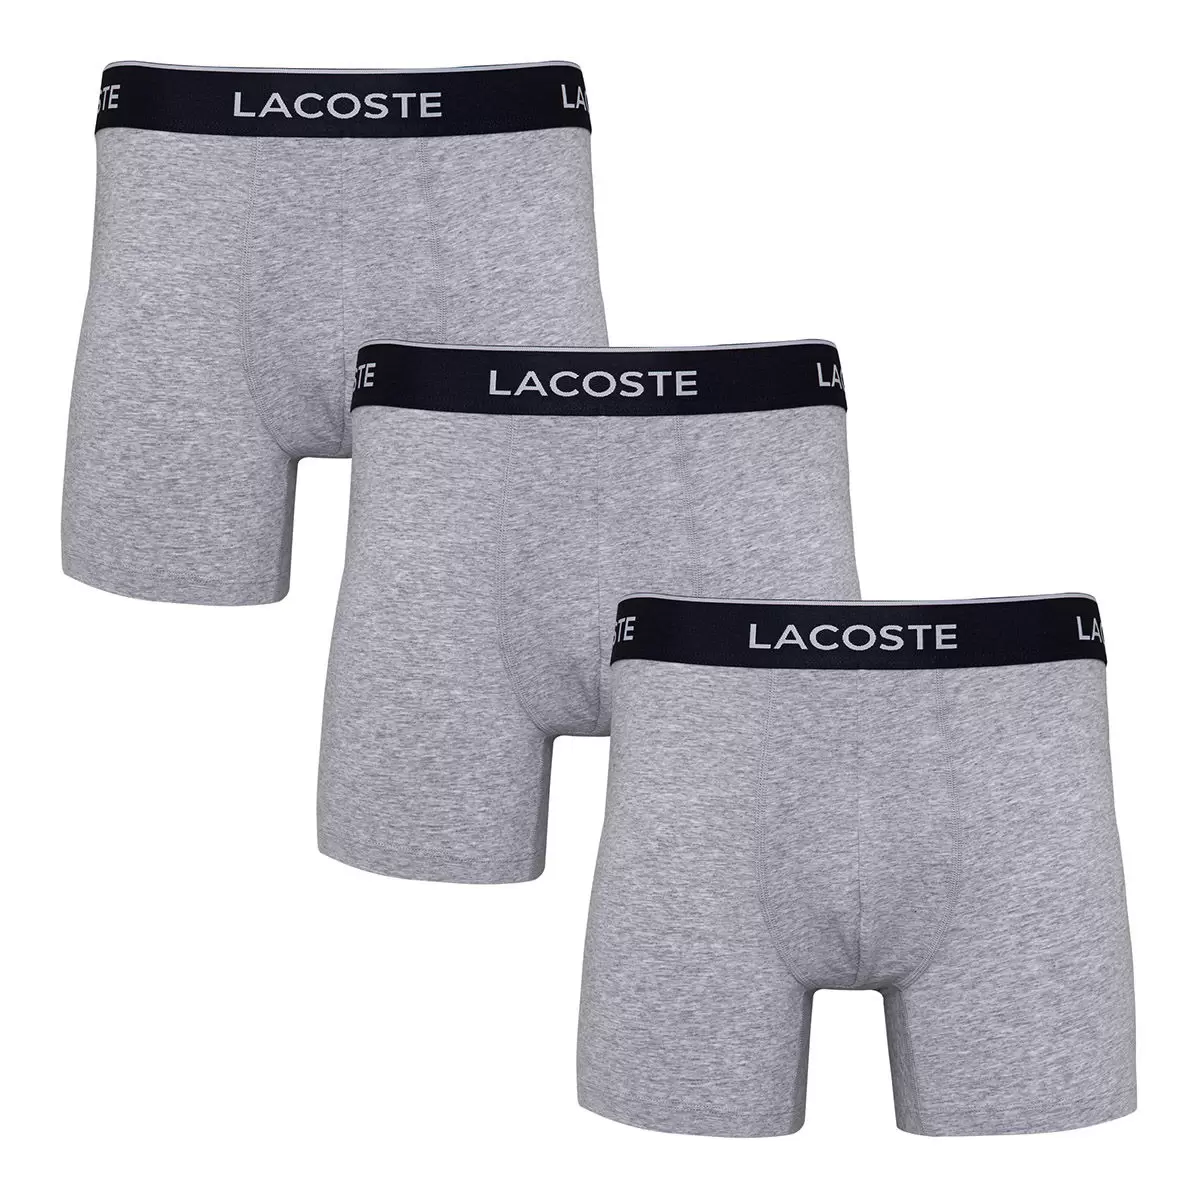 Lacoste 男彈性棉內褲三件組 灰 S